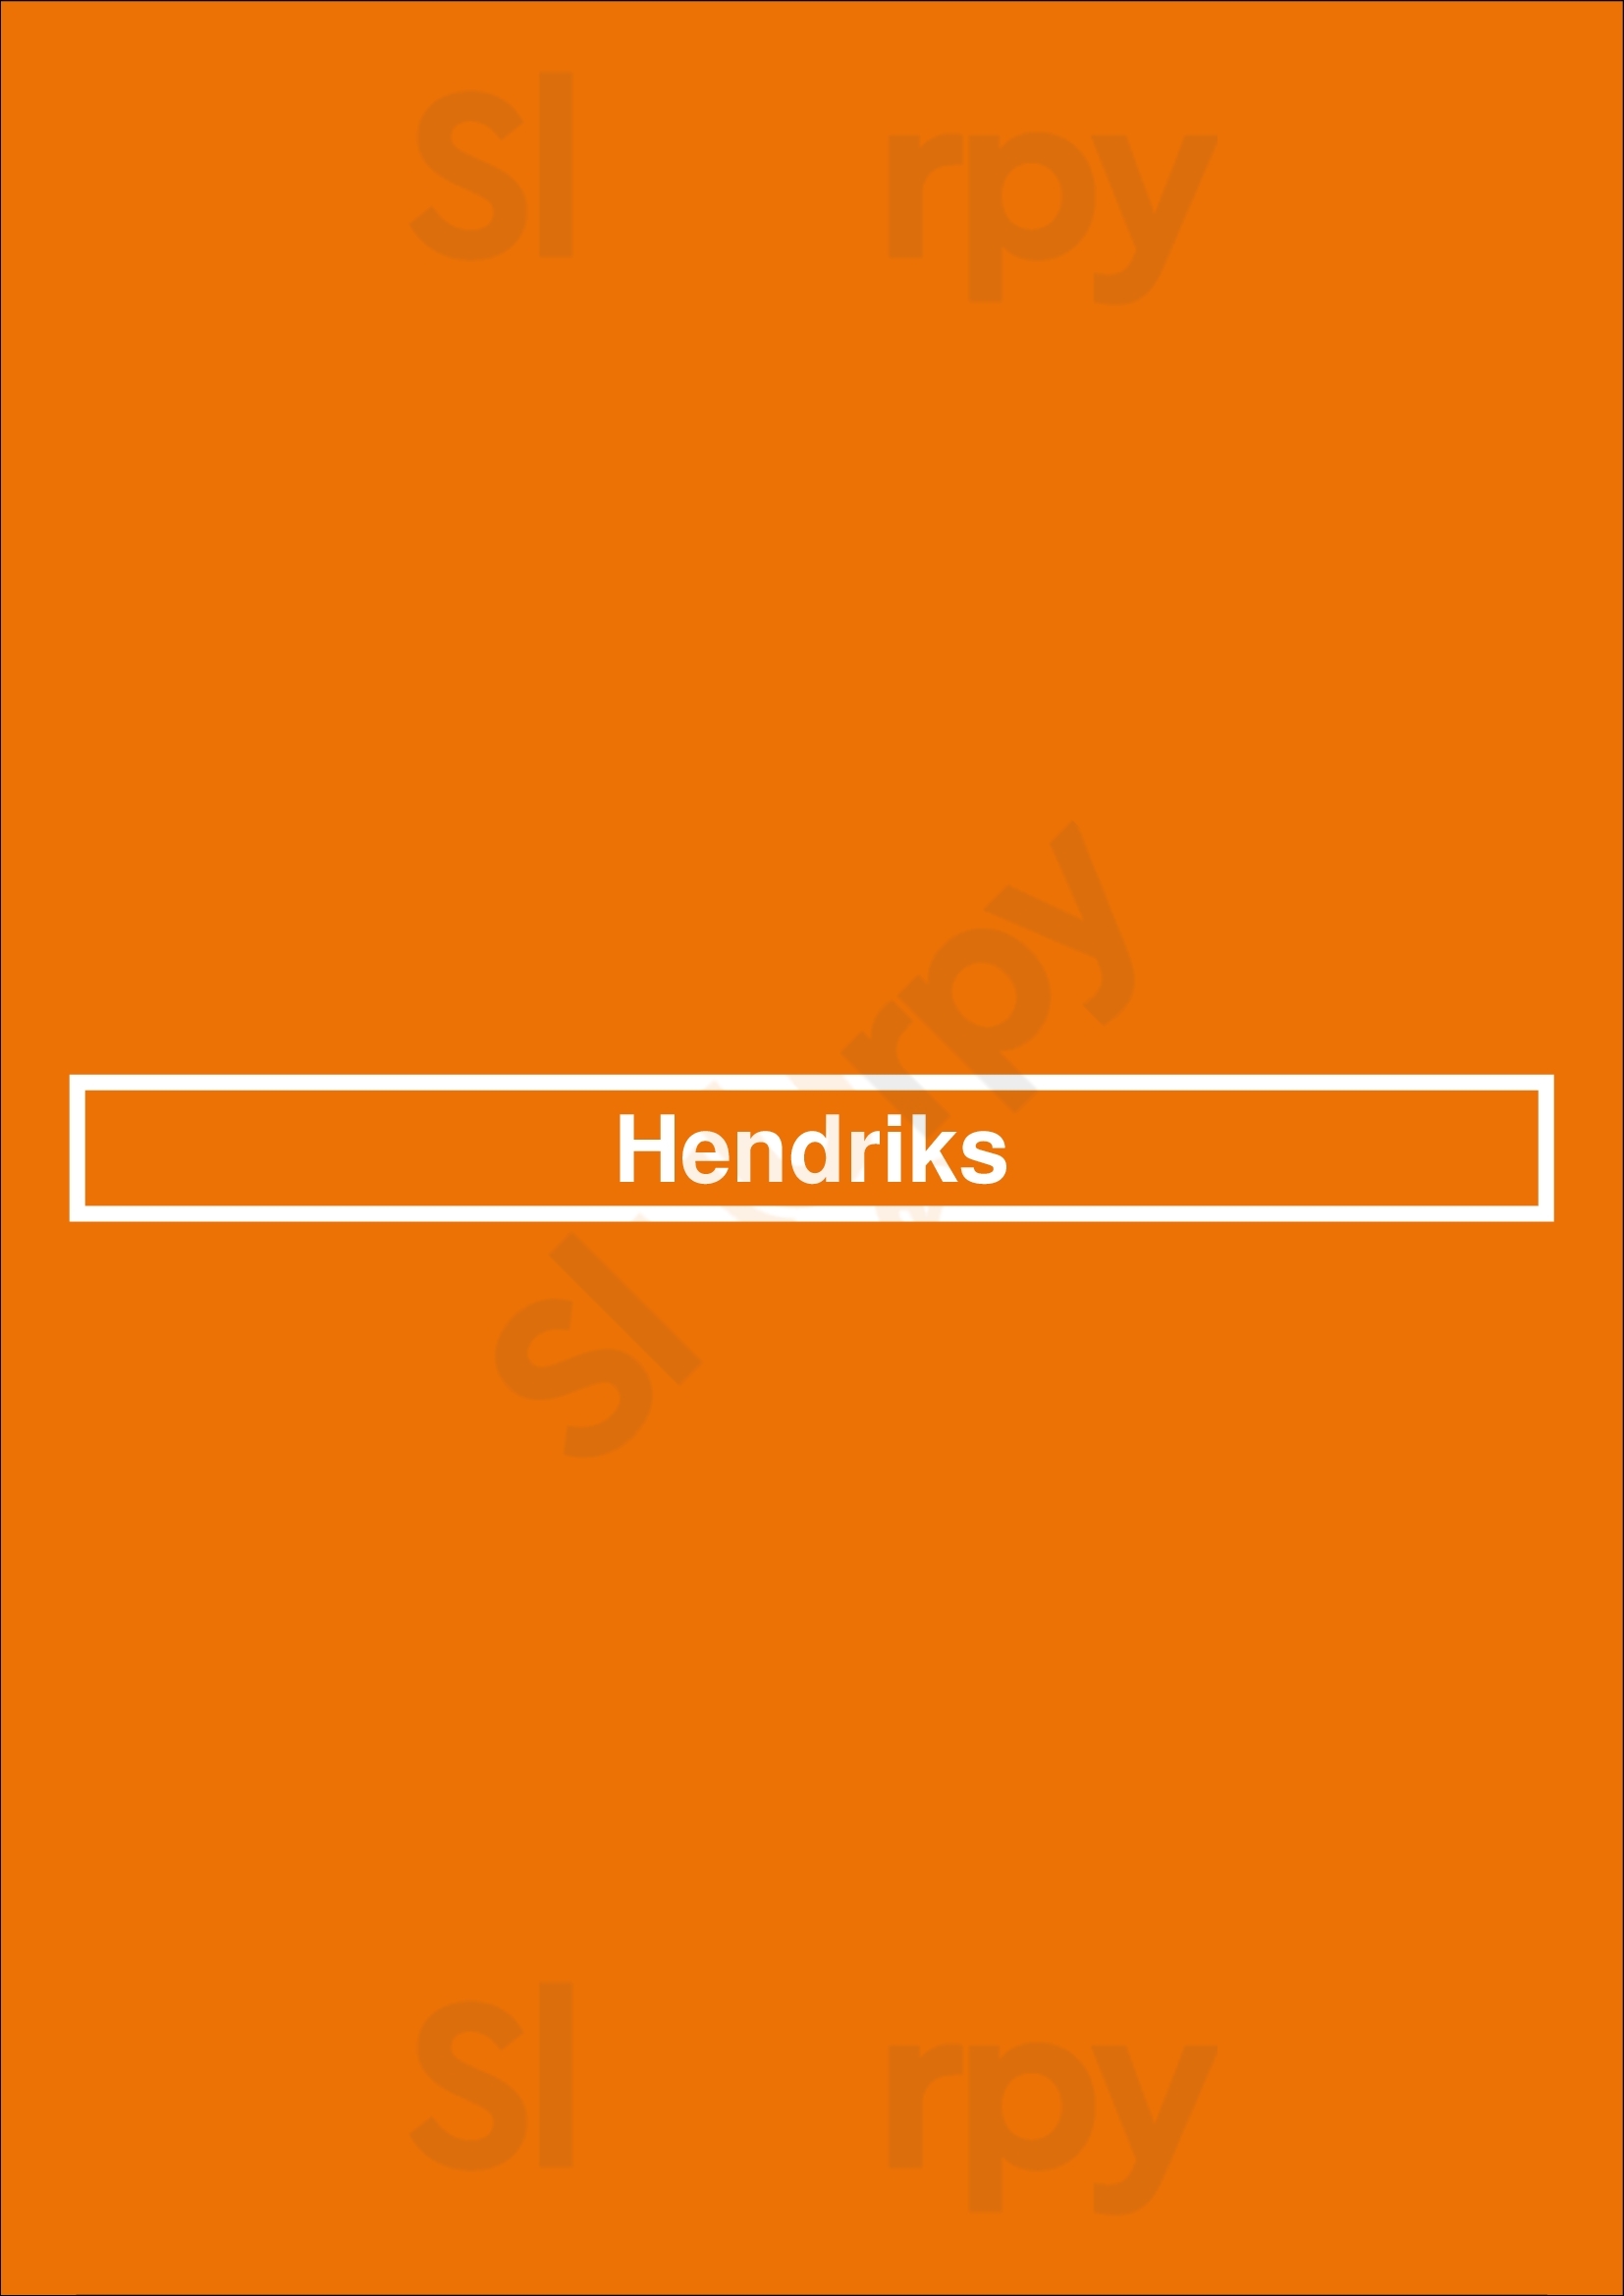 Hendriks Den Haag Menu - 1